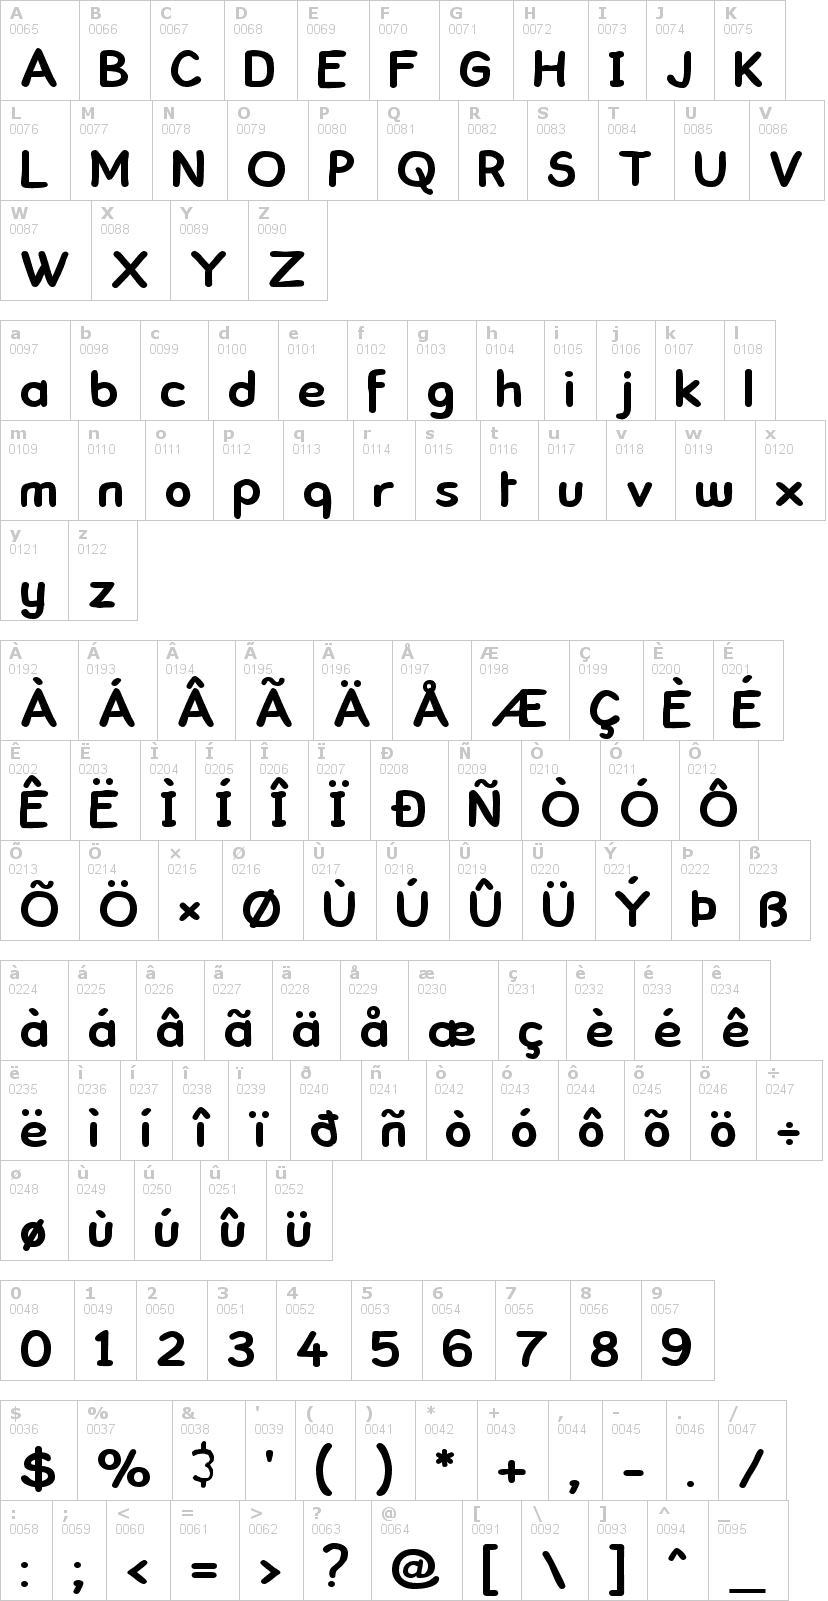 Lettere dell'alfabeto del font comickbook con le quali è possibile realizzare adesivi prespaziati